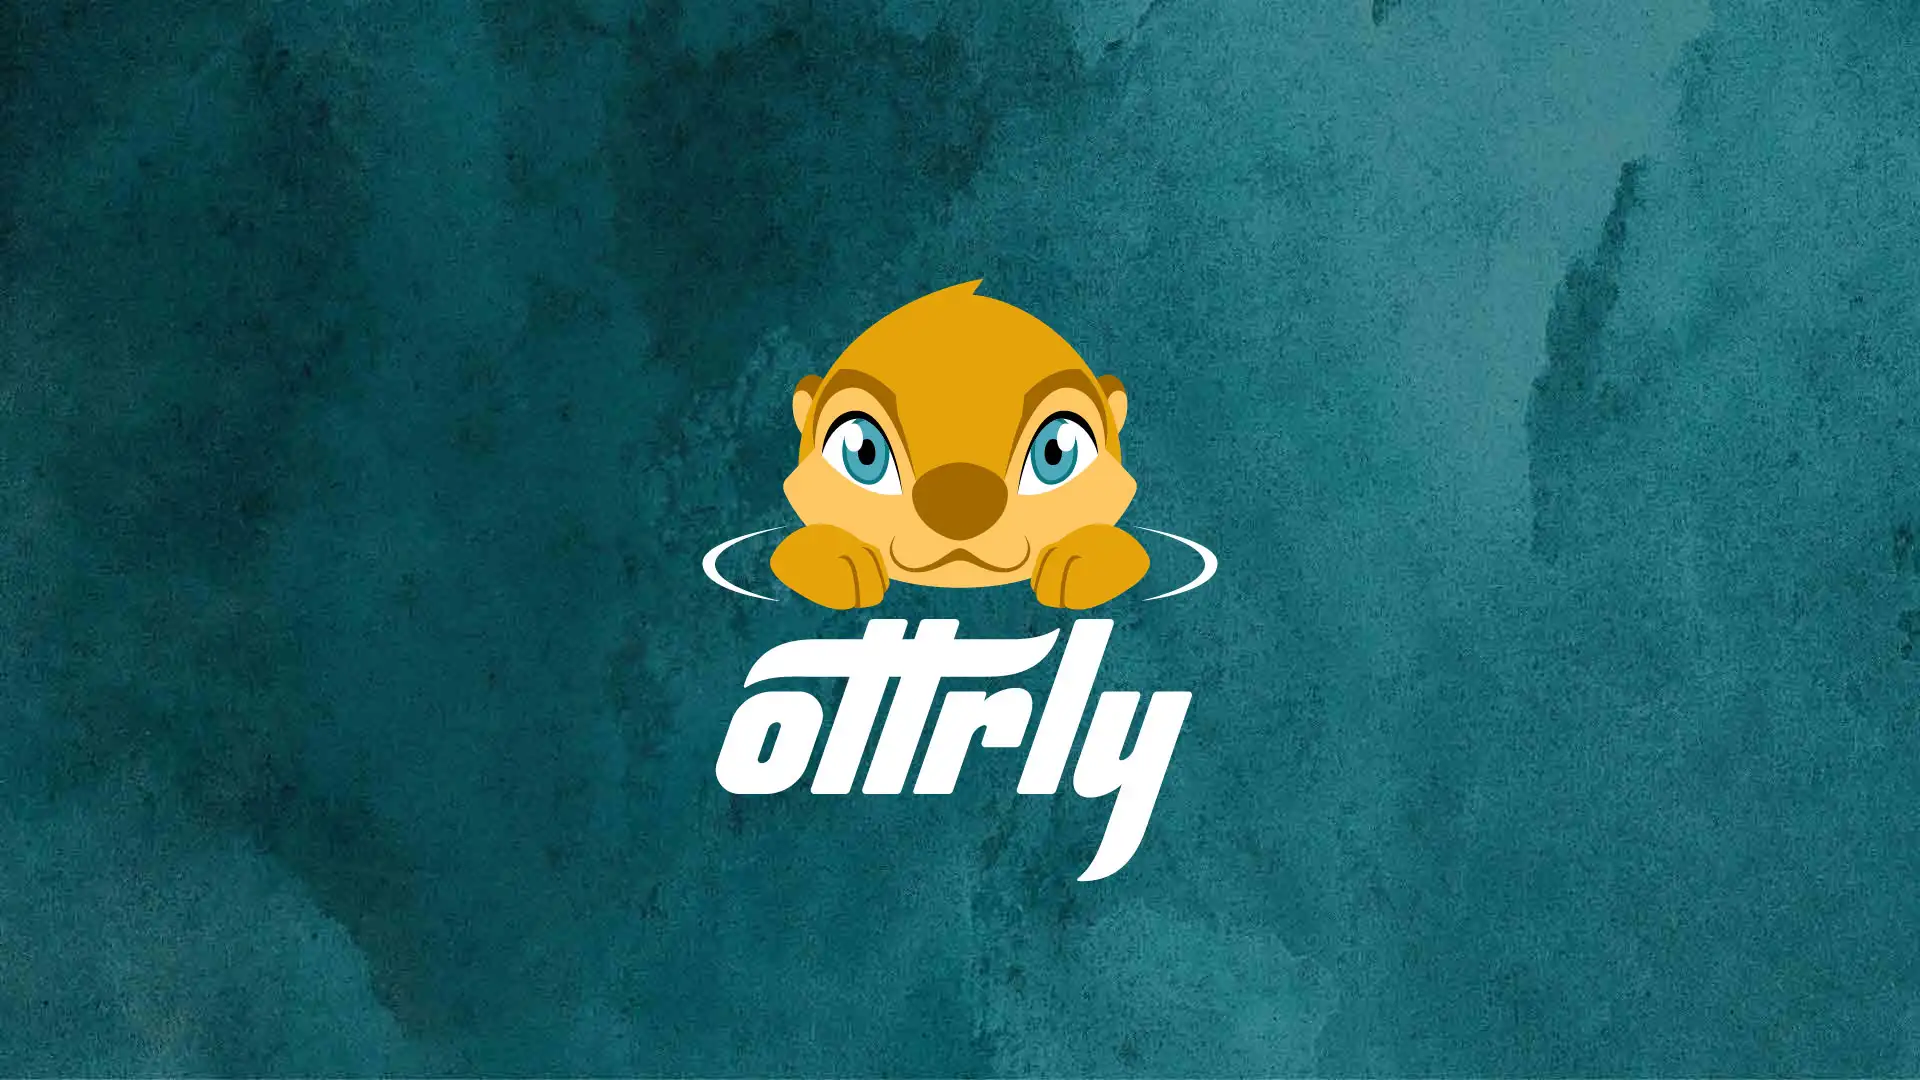 Ottrly logo design by Dusty Drake